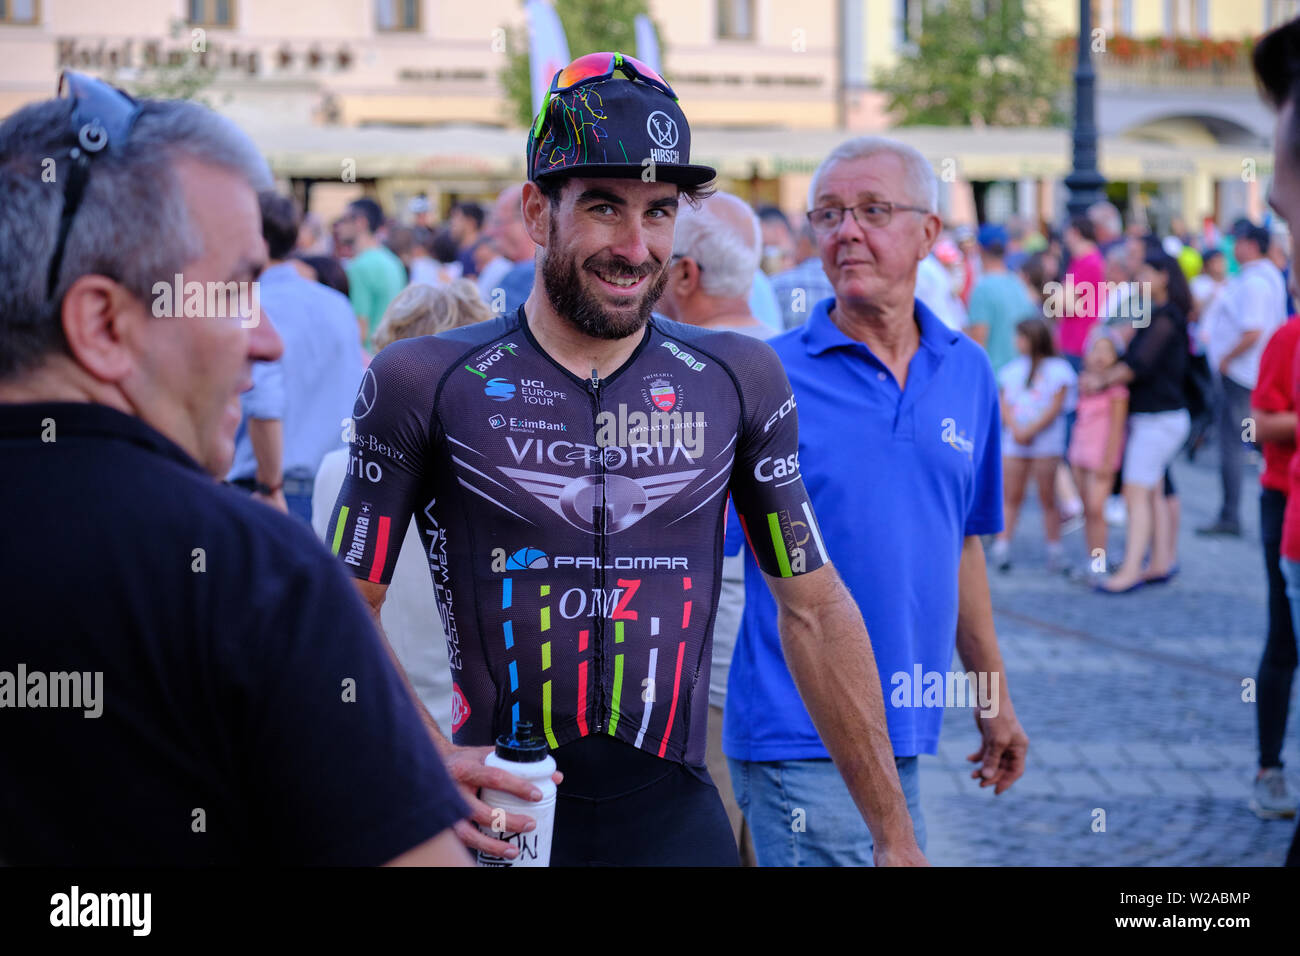 Ciclista Riccardo Stacchiotti (Team Giotti Victoria - Palomar) dall'Italia dopo aver vinto tappa giornaliera, in Sibiu Tour in bicicletta, 7 Luglio 2019 Foto Stock